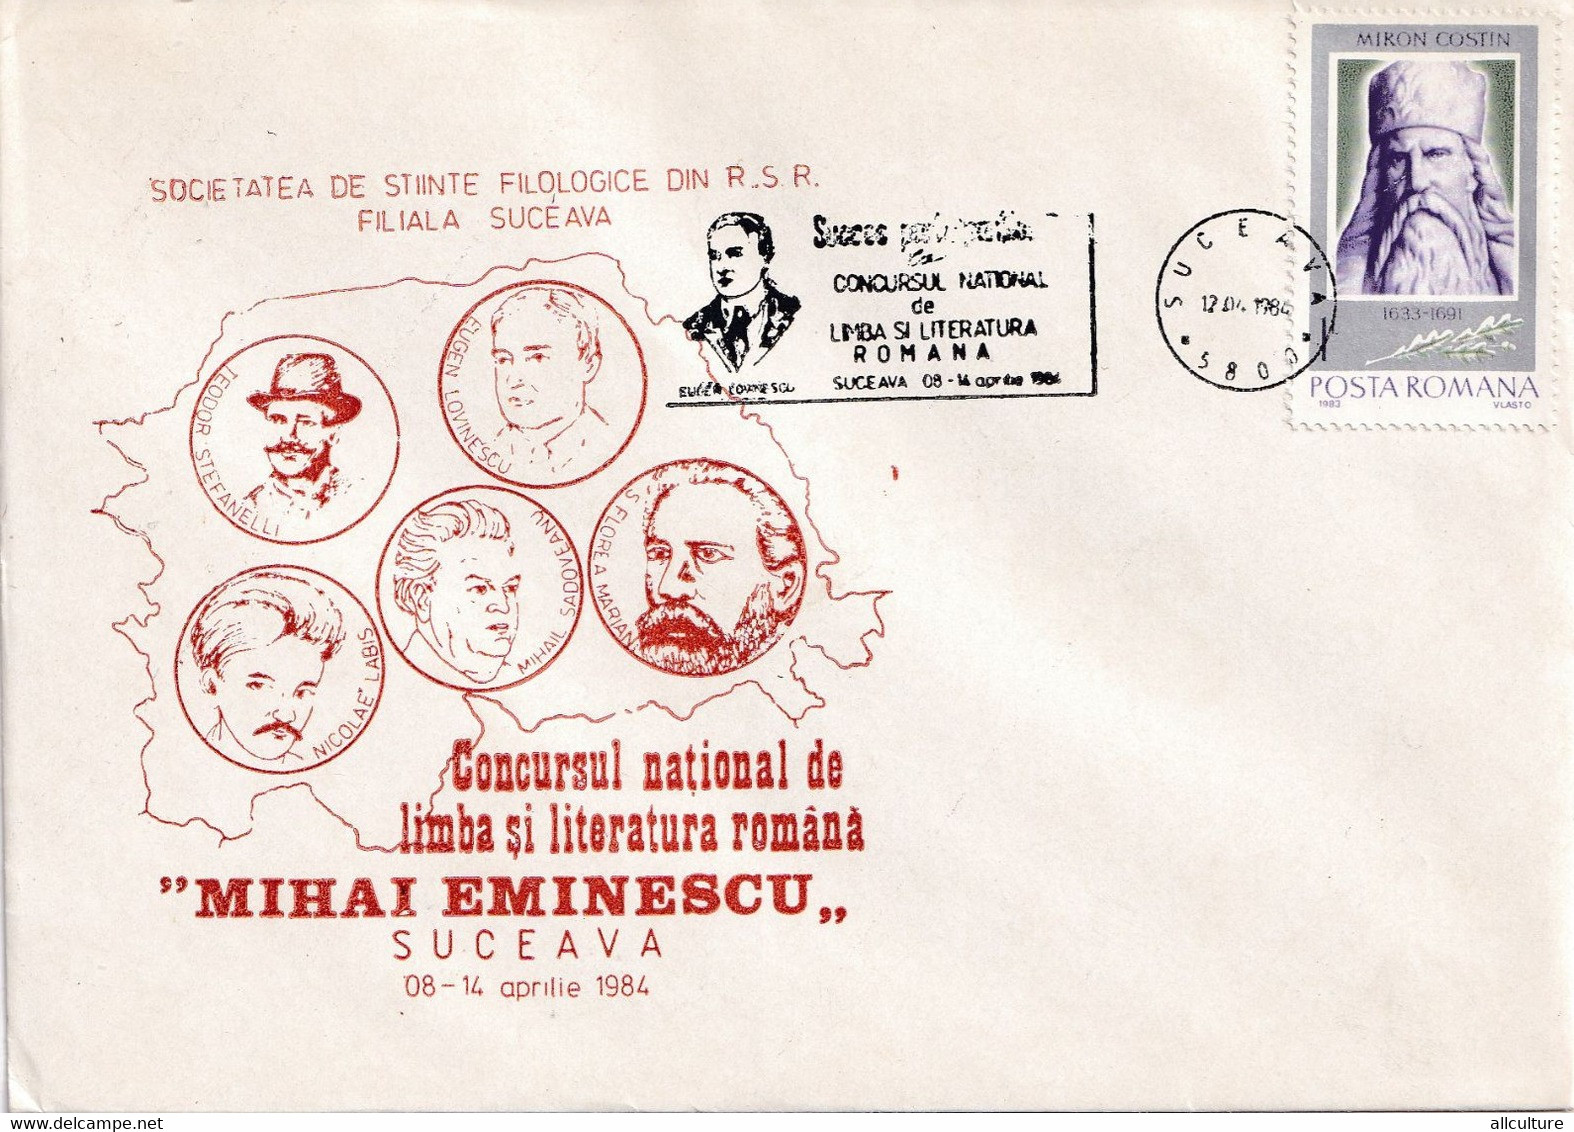 A2824 - Societatea De Stiinte Filologice, Concursul National De Literatura Romana Mihai Eminescu, Suceava 1984  Romania - Covers & Documents